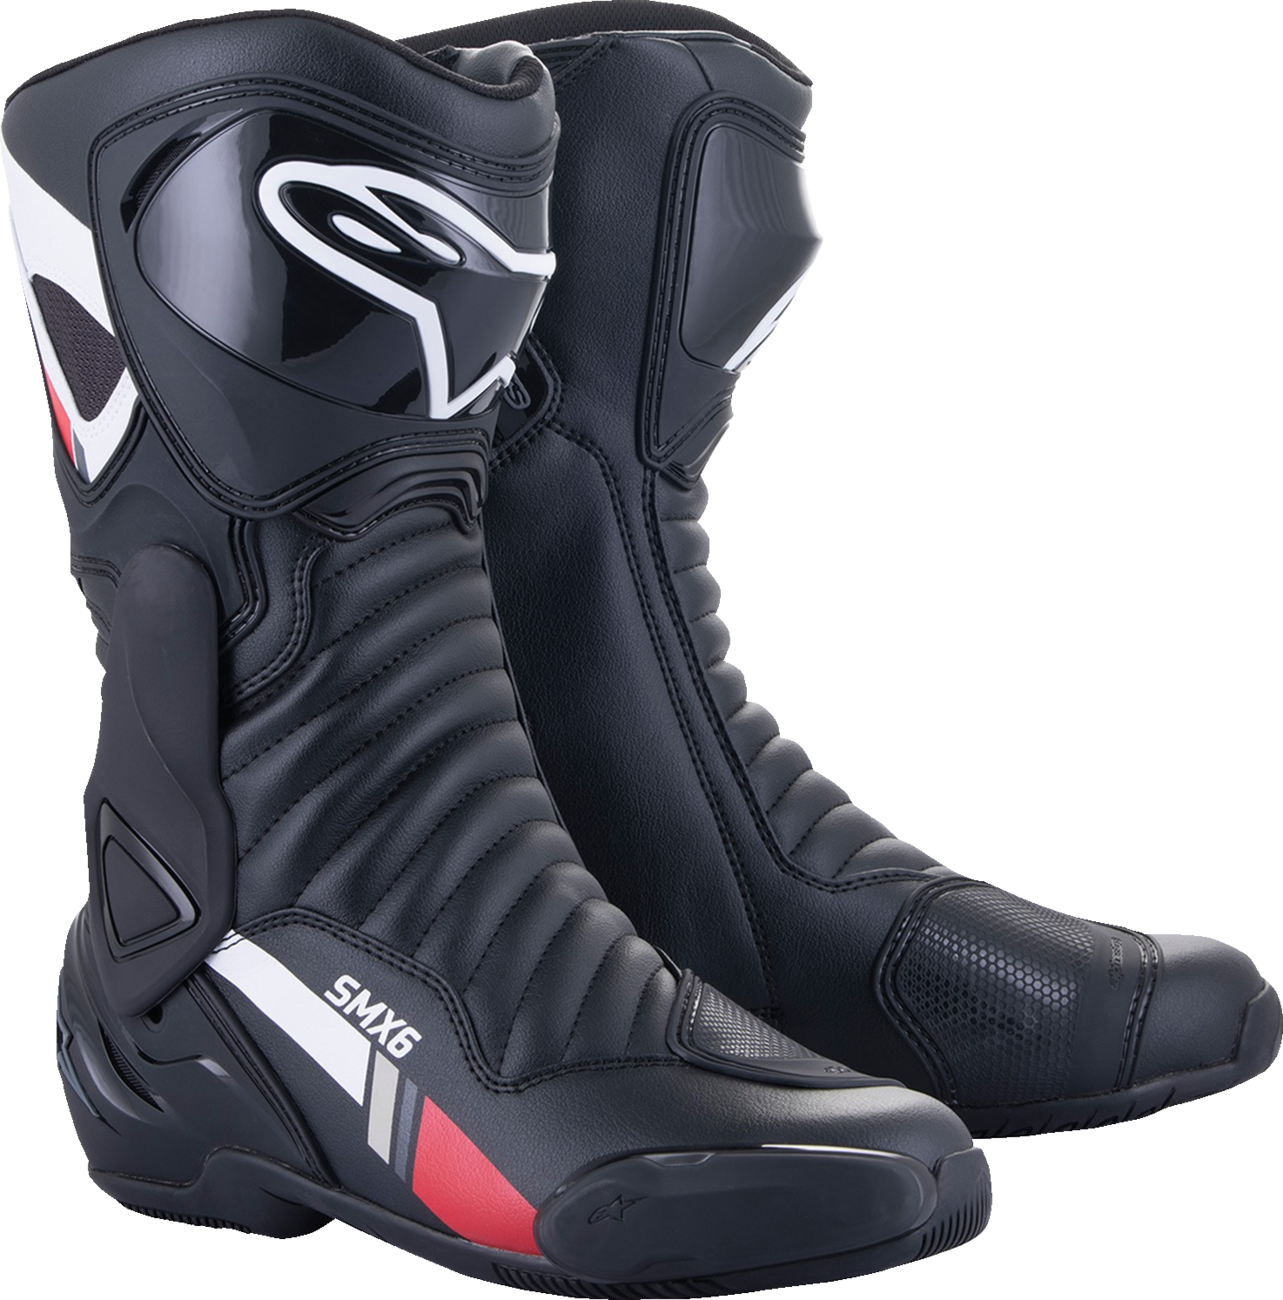 ALPINESTARS SMX-6 v2 Boots - Black/White/Gray - US 7.5 / EU 41 2223017-153-41